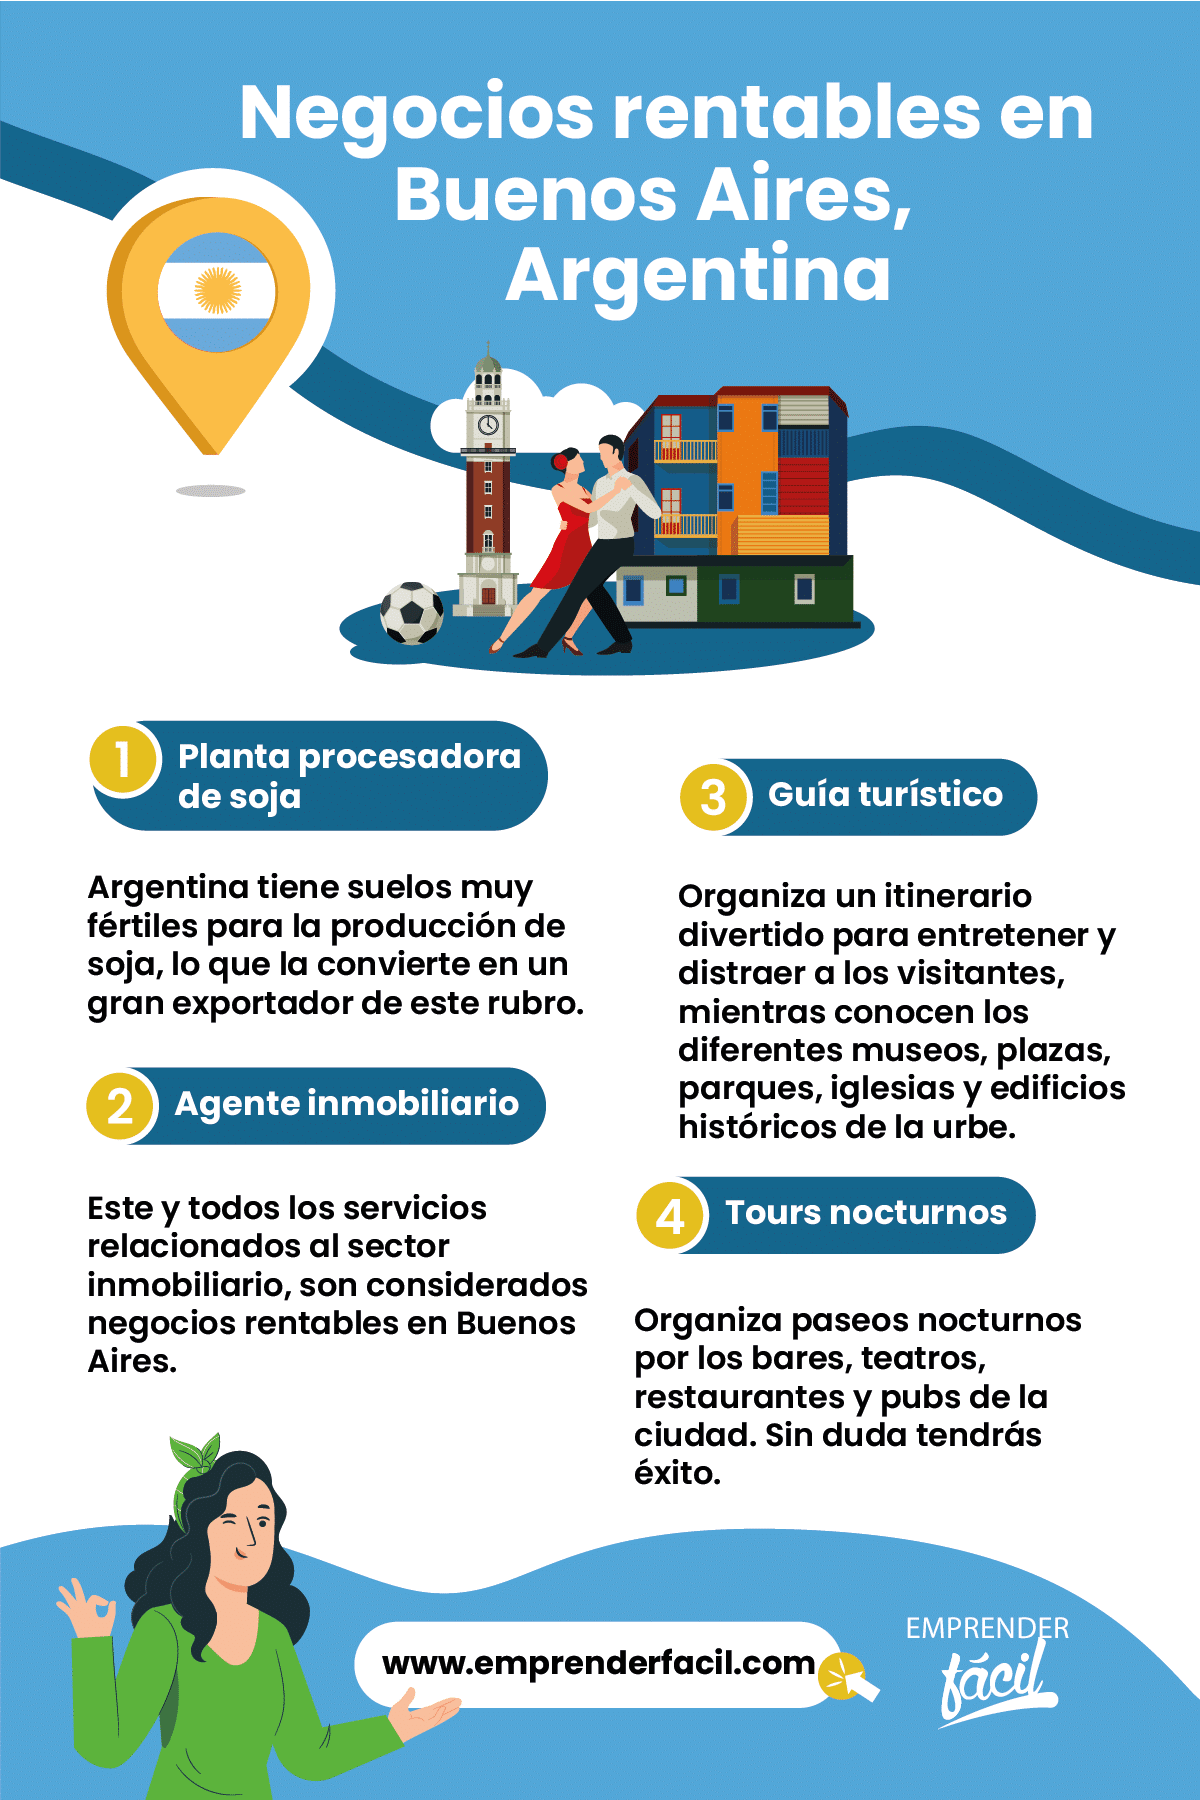 Negocios rentables en Buenos Aires, Argentina.